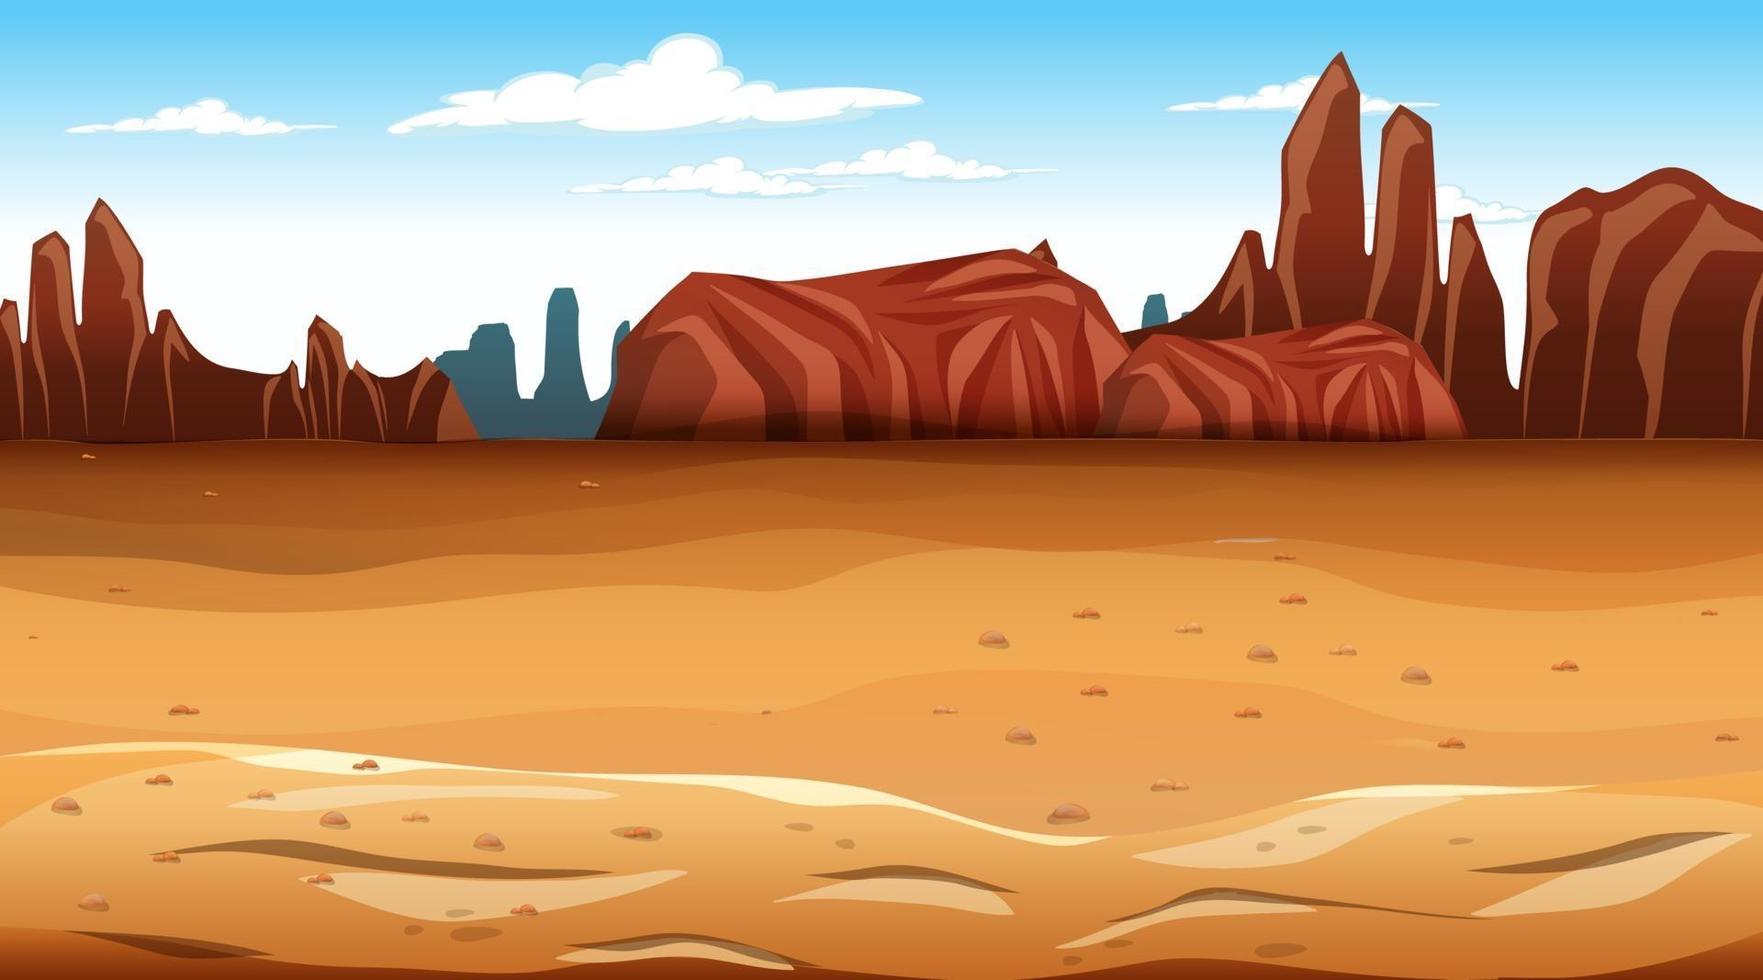 Blank Desert forest landscape scene vector